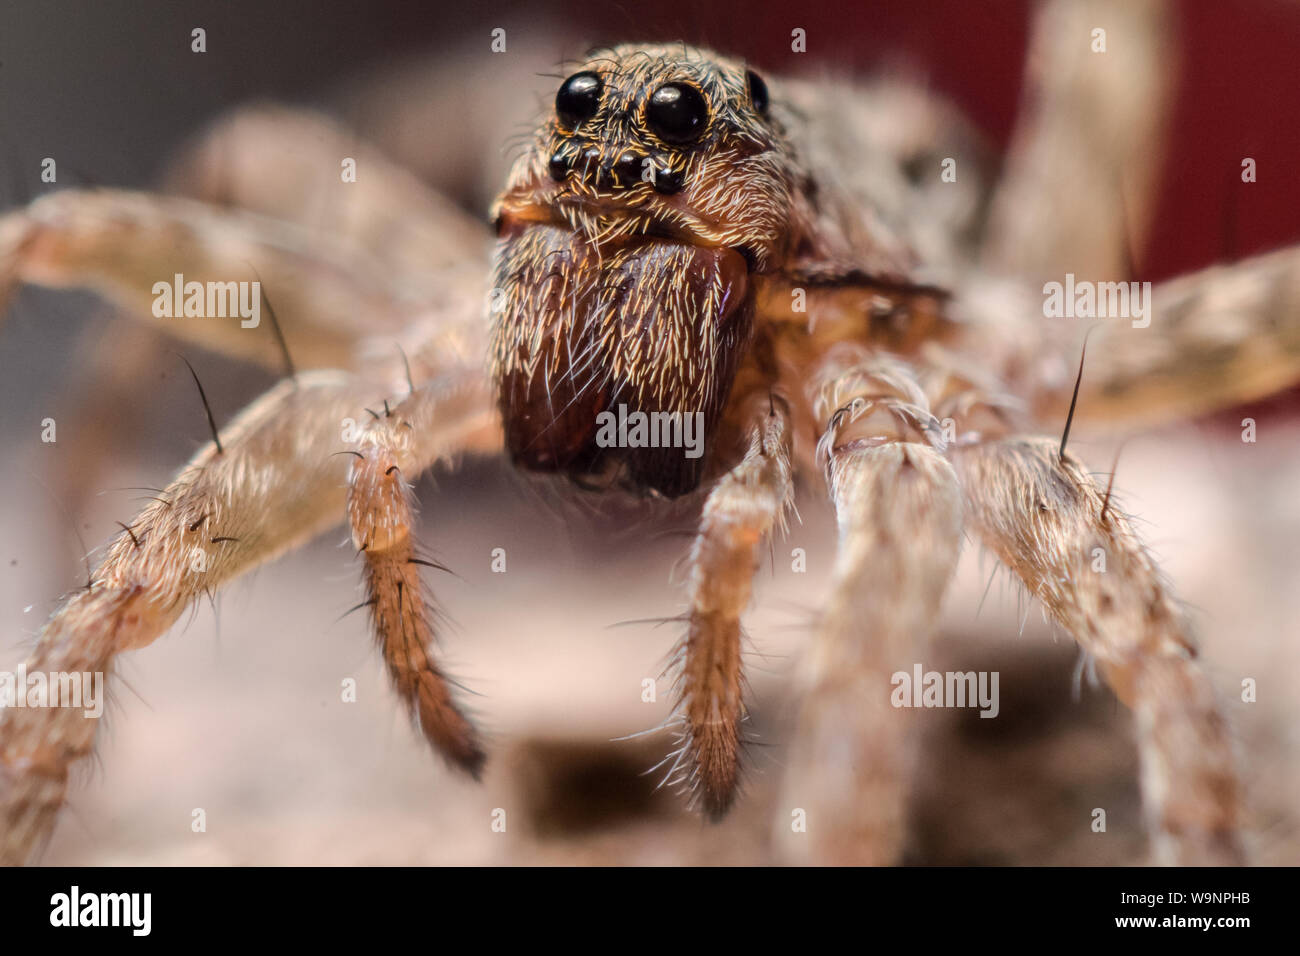 Close-up of a wolf spider lumineux dans des jardins communs, l'extrême macro avec l'arachnide face en détail Banque D'Images